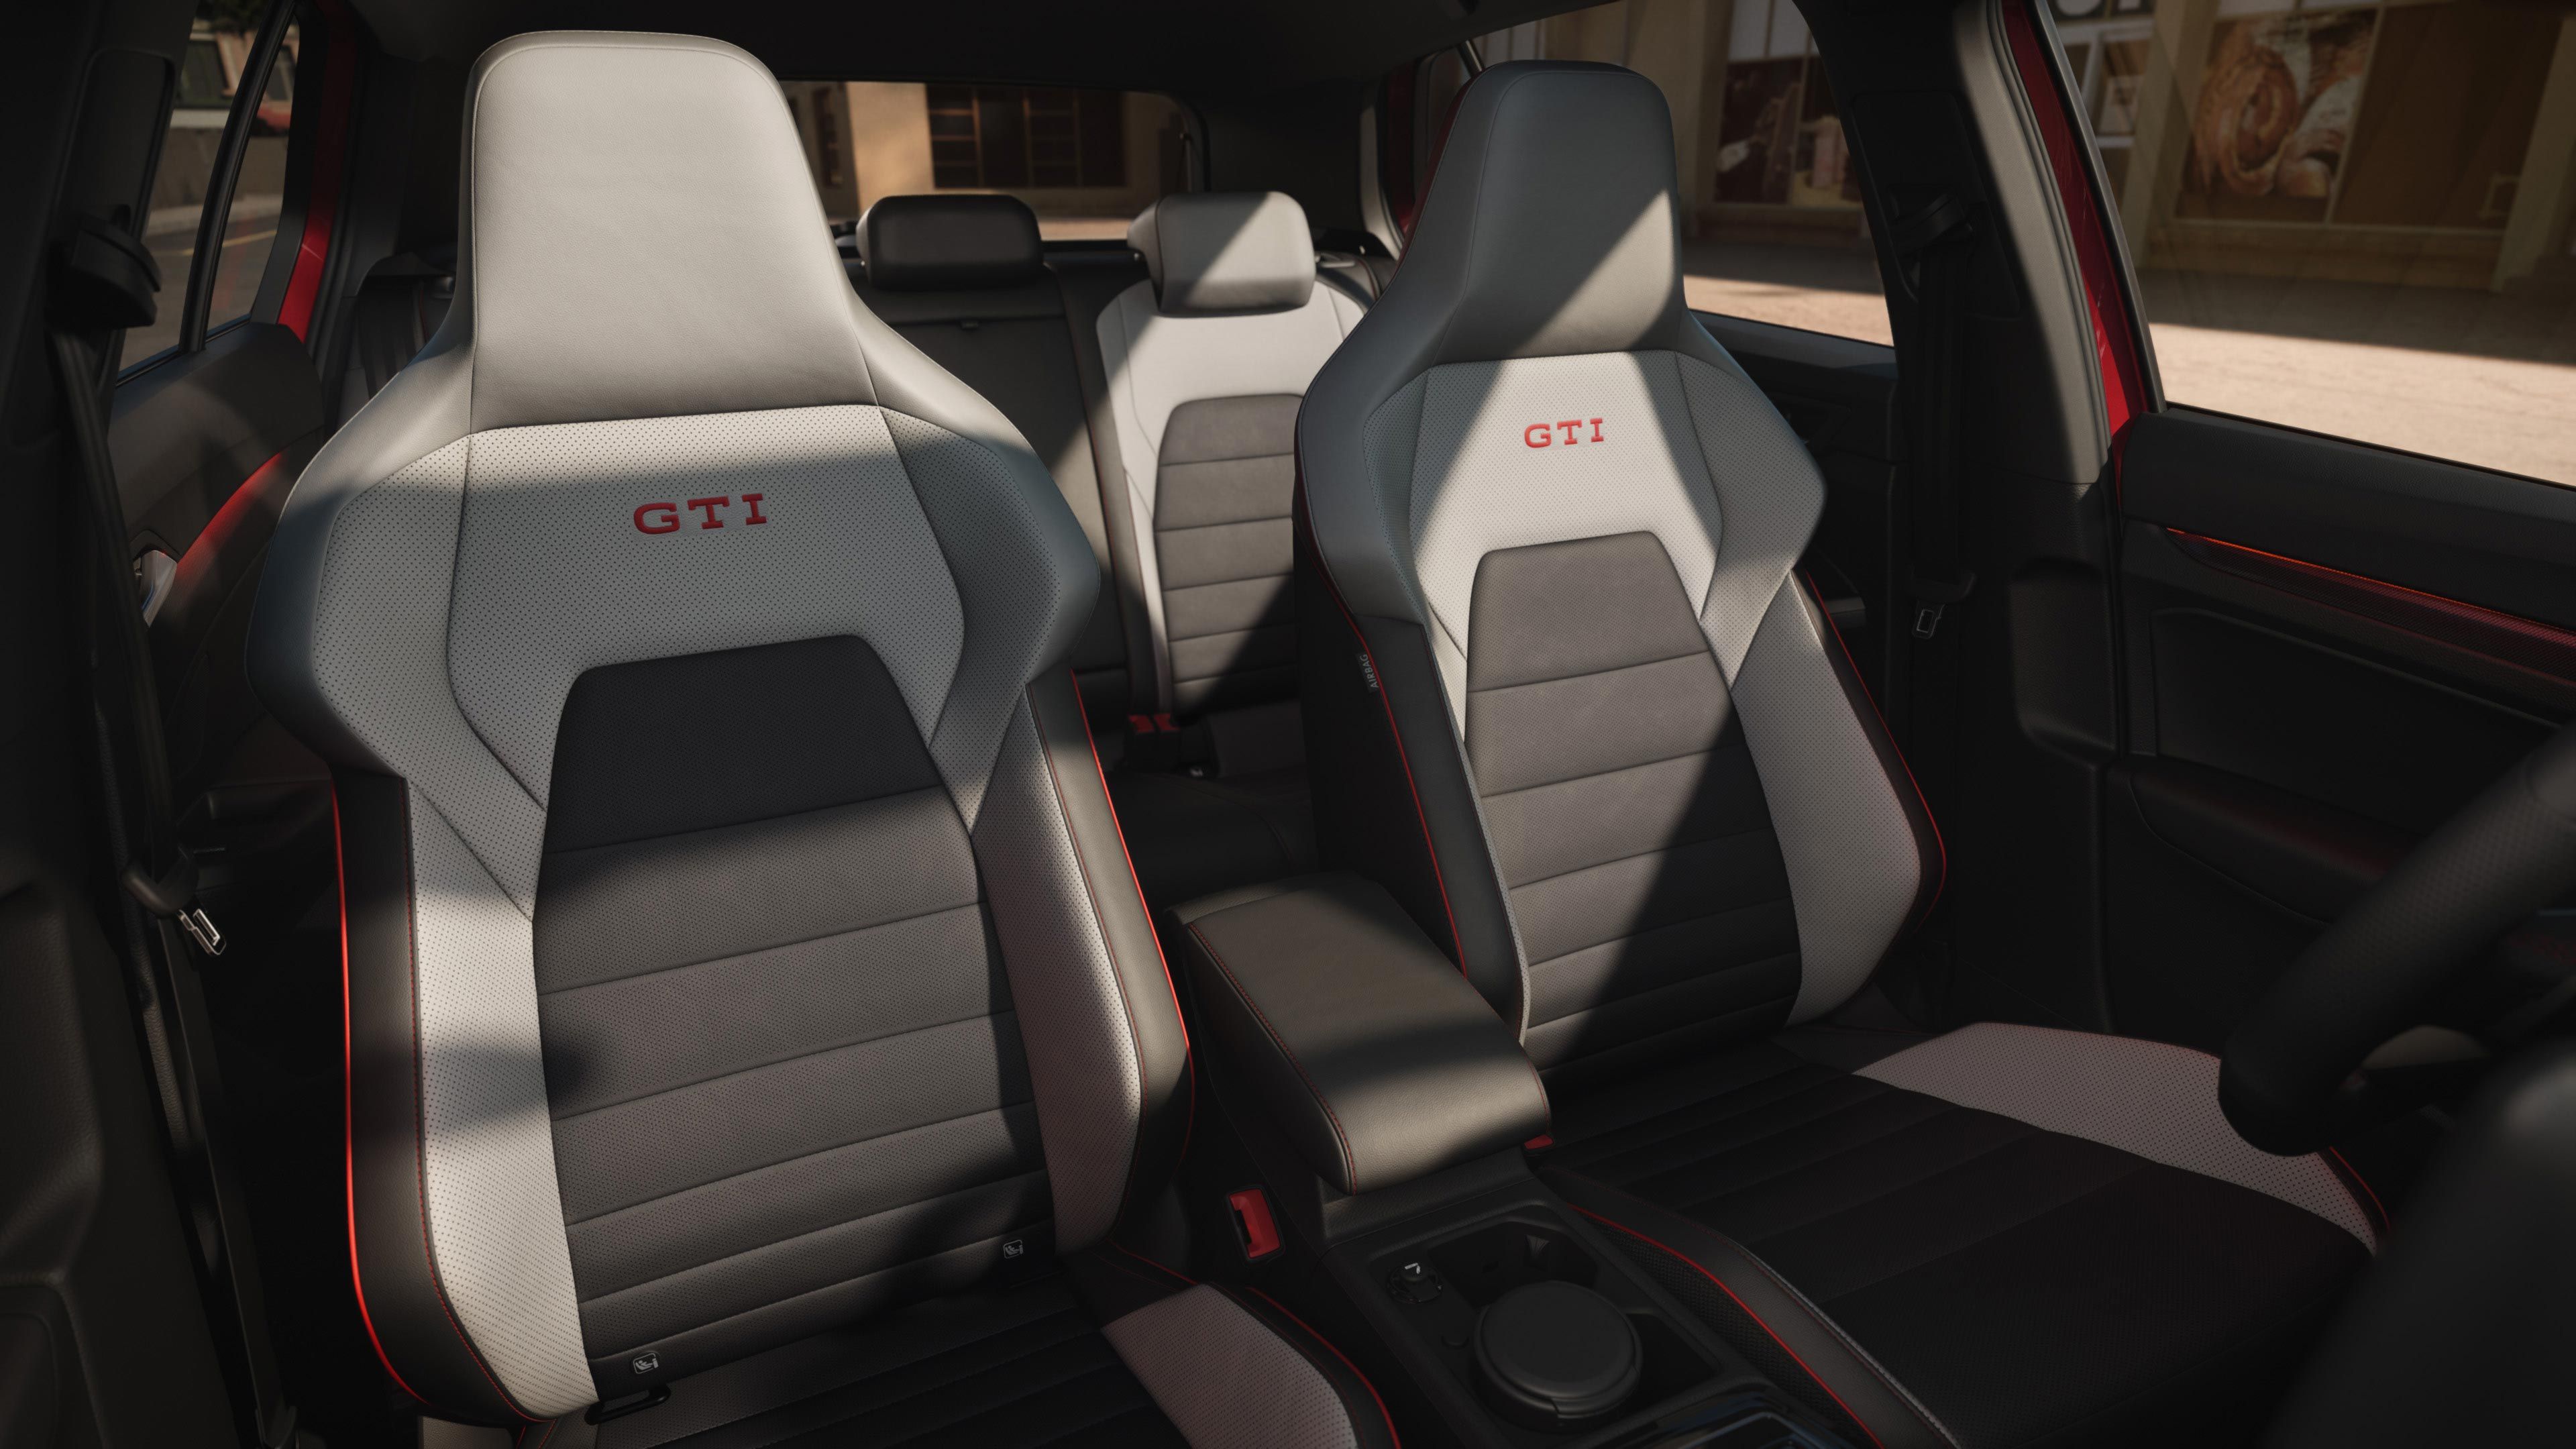 Sitze mit GTI Schriftzug im VW Golf GTI